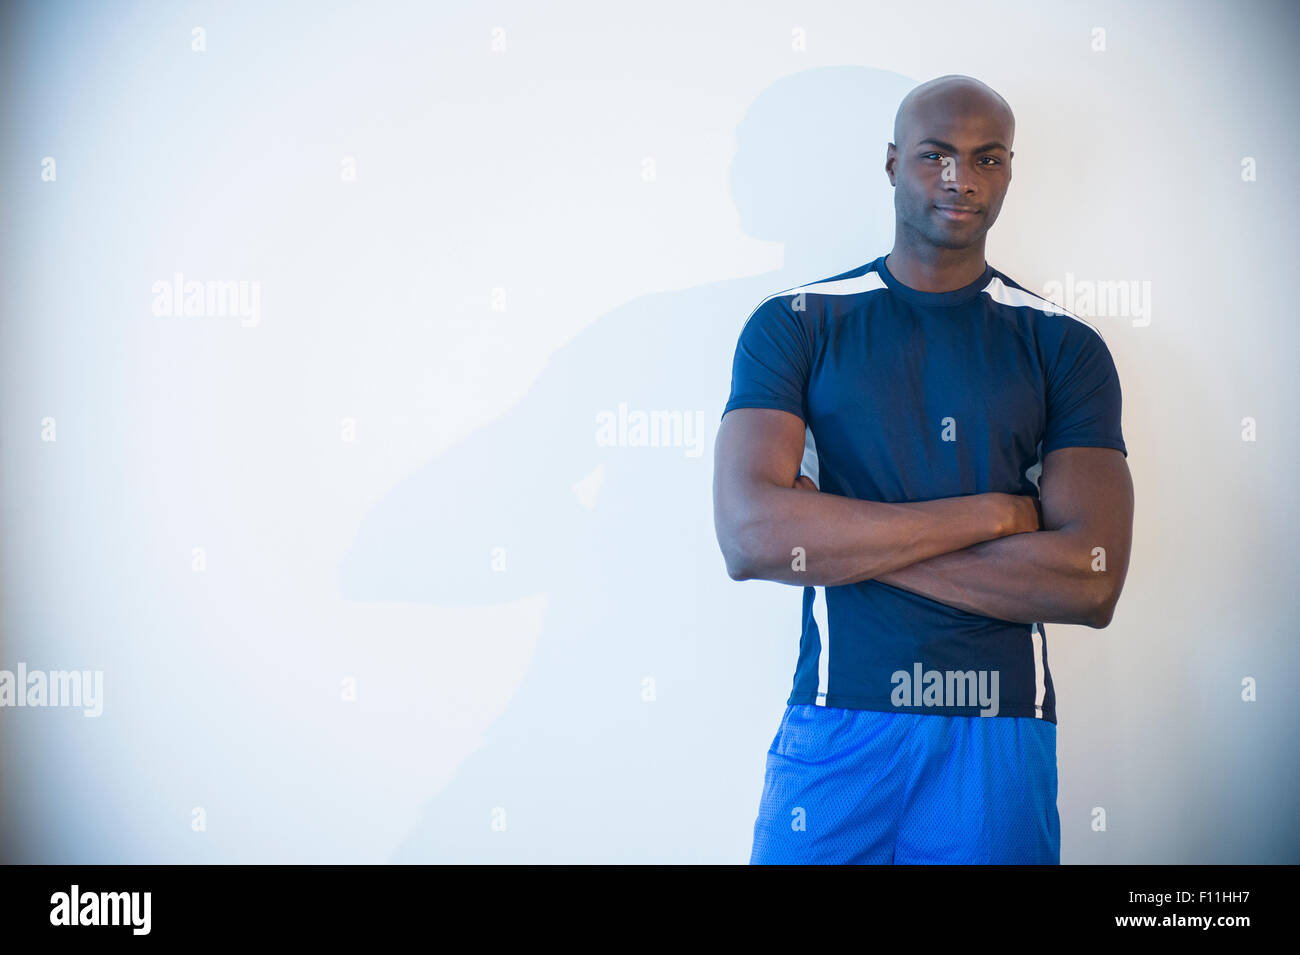 Black man wearing sportswear Stock Photo